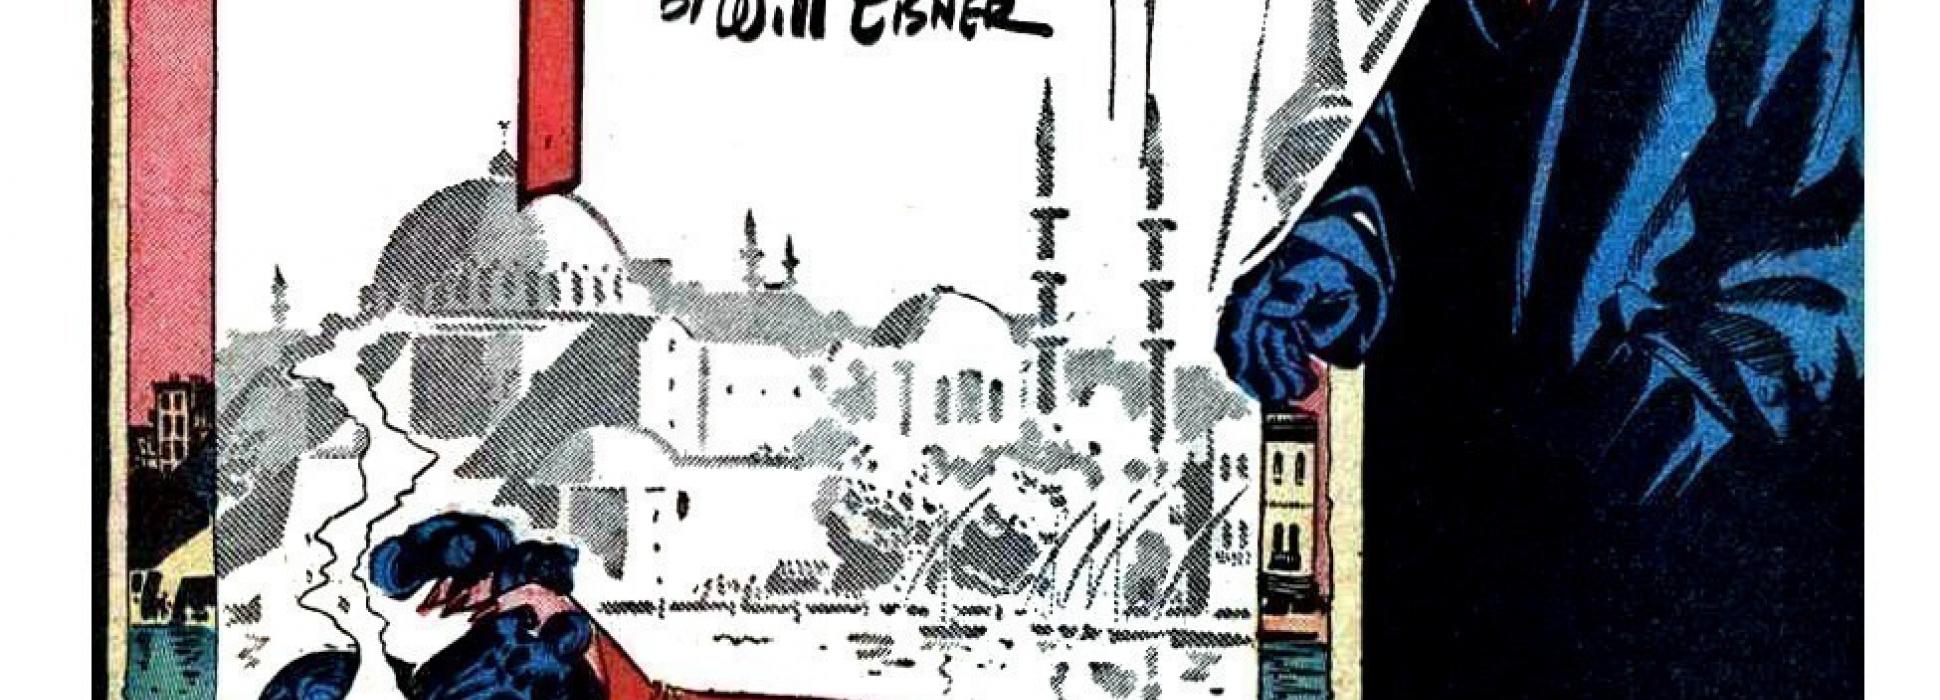 A Cherbourg-en-Cotentin, la 10ème biennale de bande dessinée sera consacrée à l’américain Will Eisner